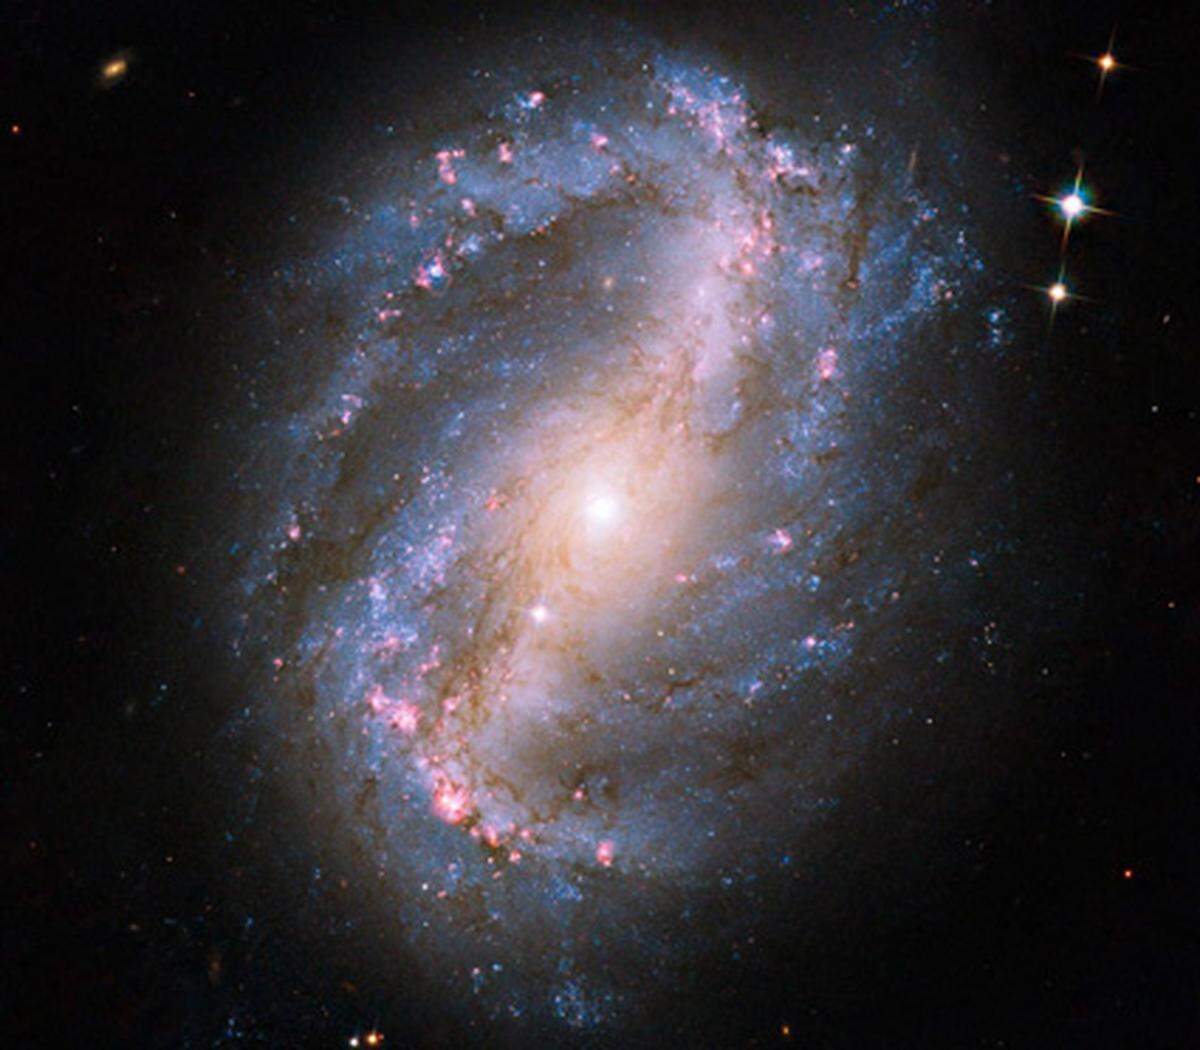 Die Spiralgalaxie NGC 6217 war das erste Motiv, das mit Hubbles im Mai reparierter Advanced Camera for Surveys aufgenommen wurde. Sie liegt sechs Millionen Lichtjahre entfernt von der Erde im Sternbild des Großen Bären.